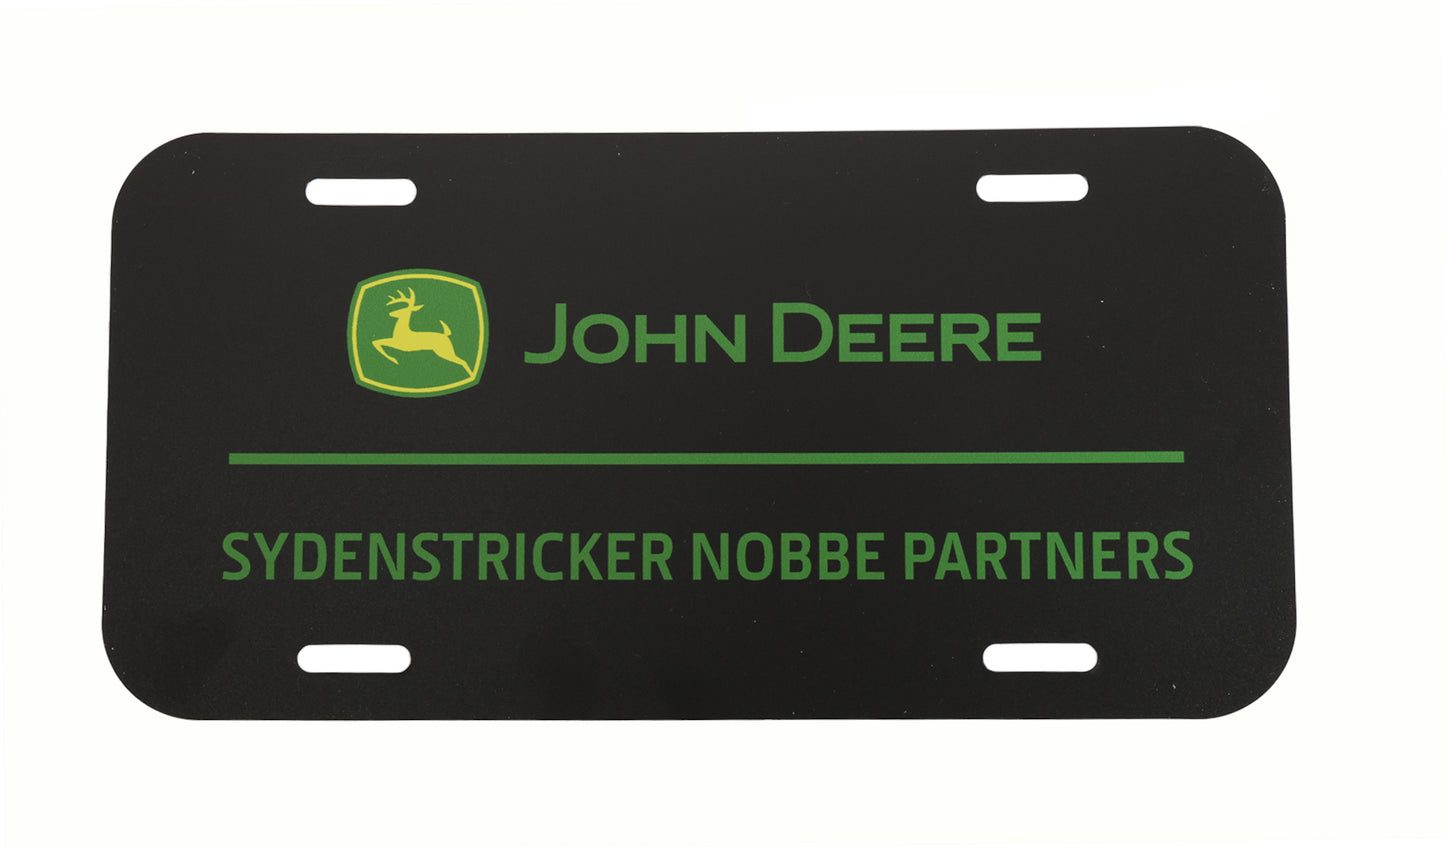 John Deere "Sydenstricker Nobbe Partners" License Plate - LP85908